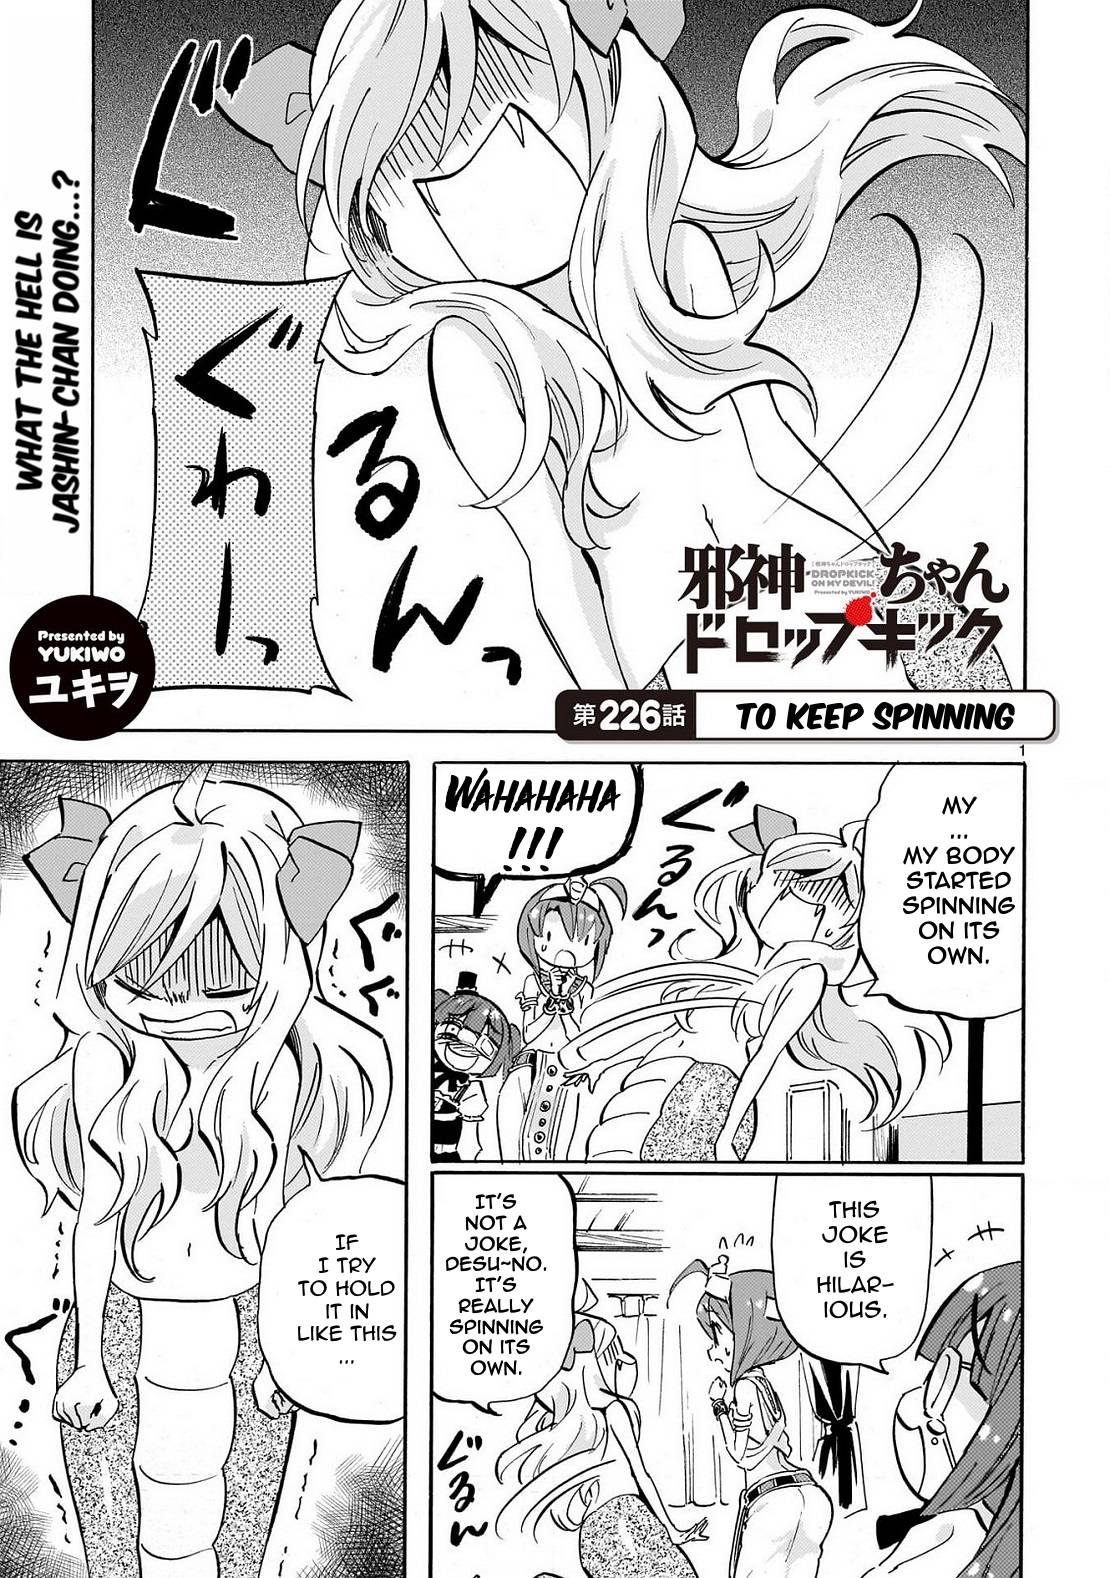 Jashin-chan Dropkick chapter 231 page 1